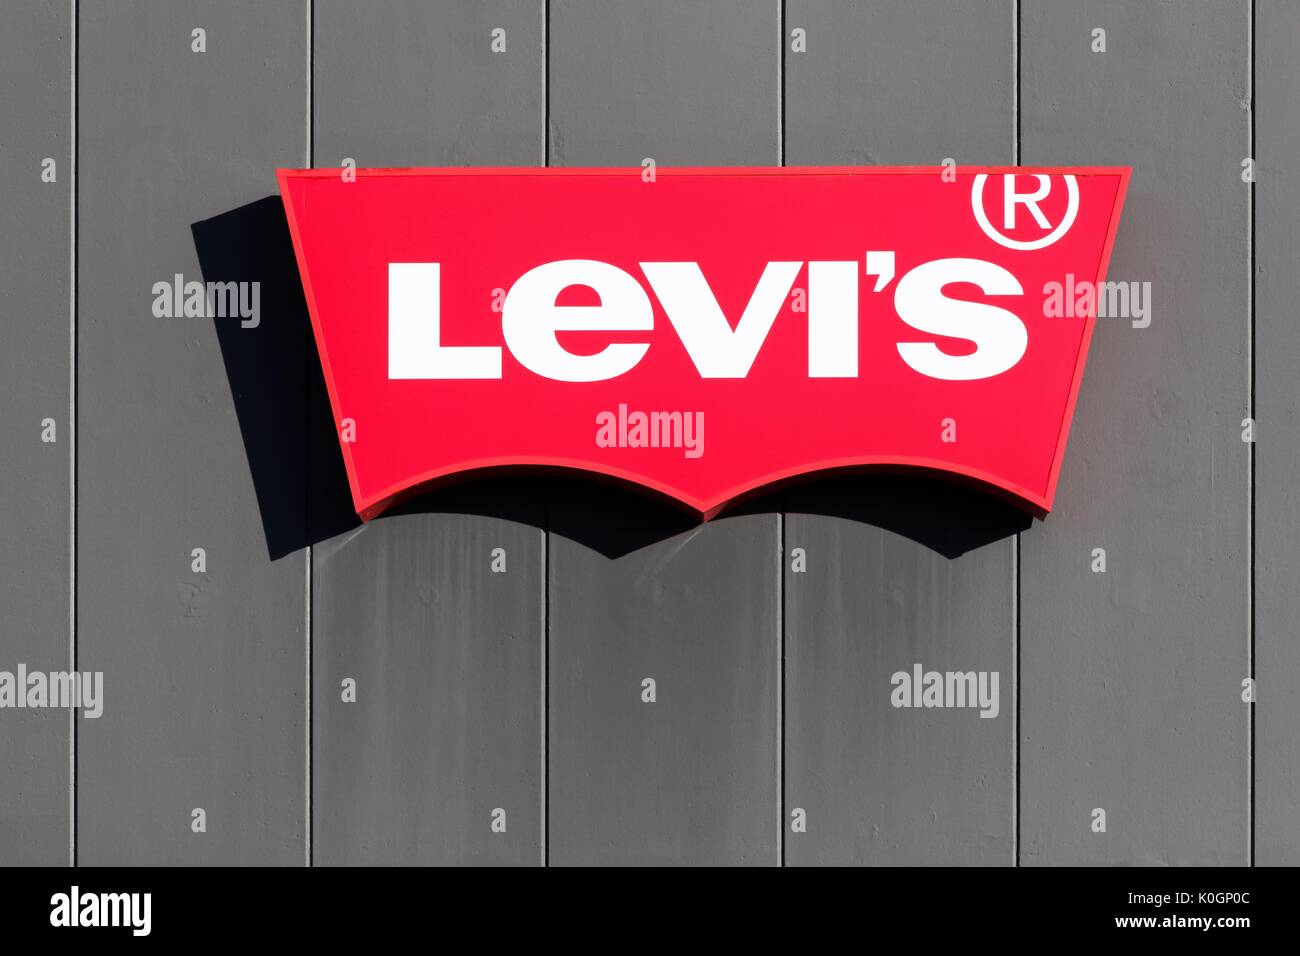 Merignac, Francia - 5 Giugno 2017: Levi Strauss è una società privata di abbigliamento americano azienda nota in tutto il mondo per i suoi Levi's marca di jeans denim Foto Stock